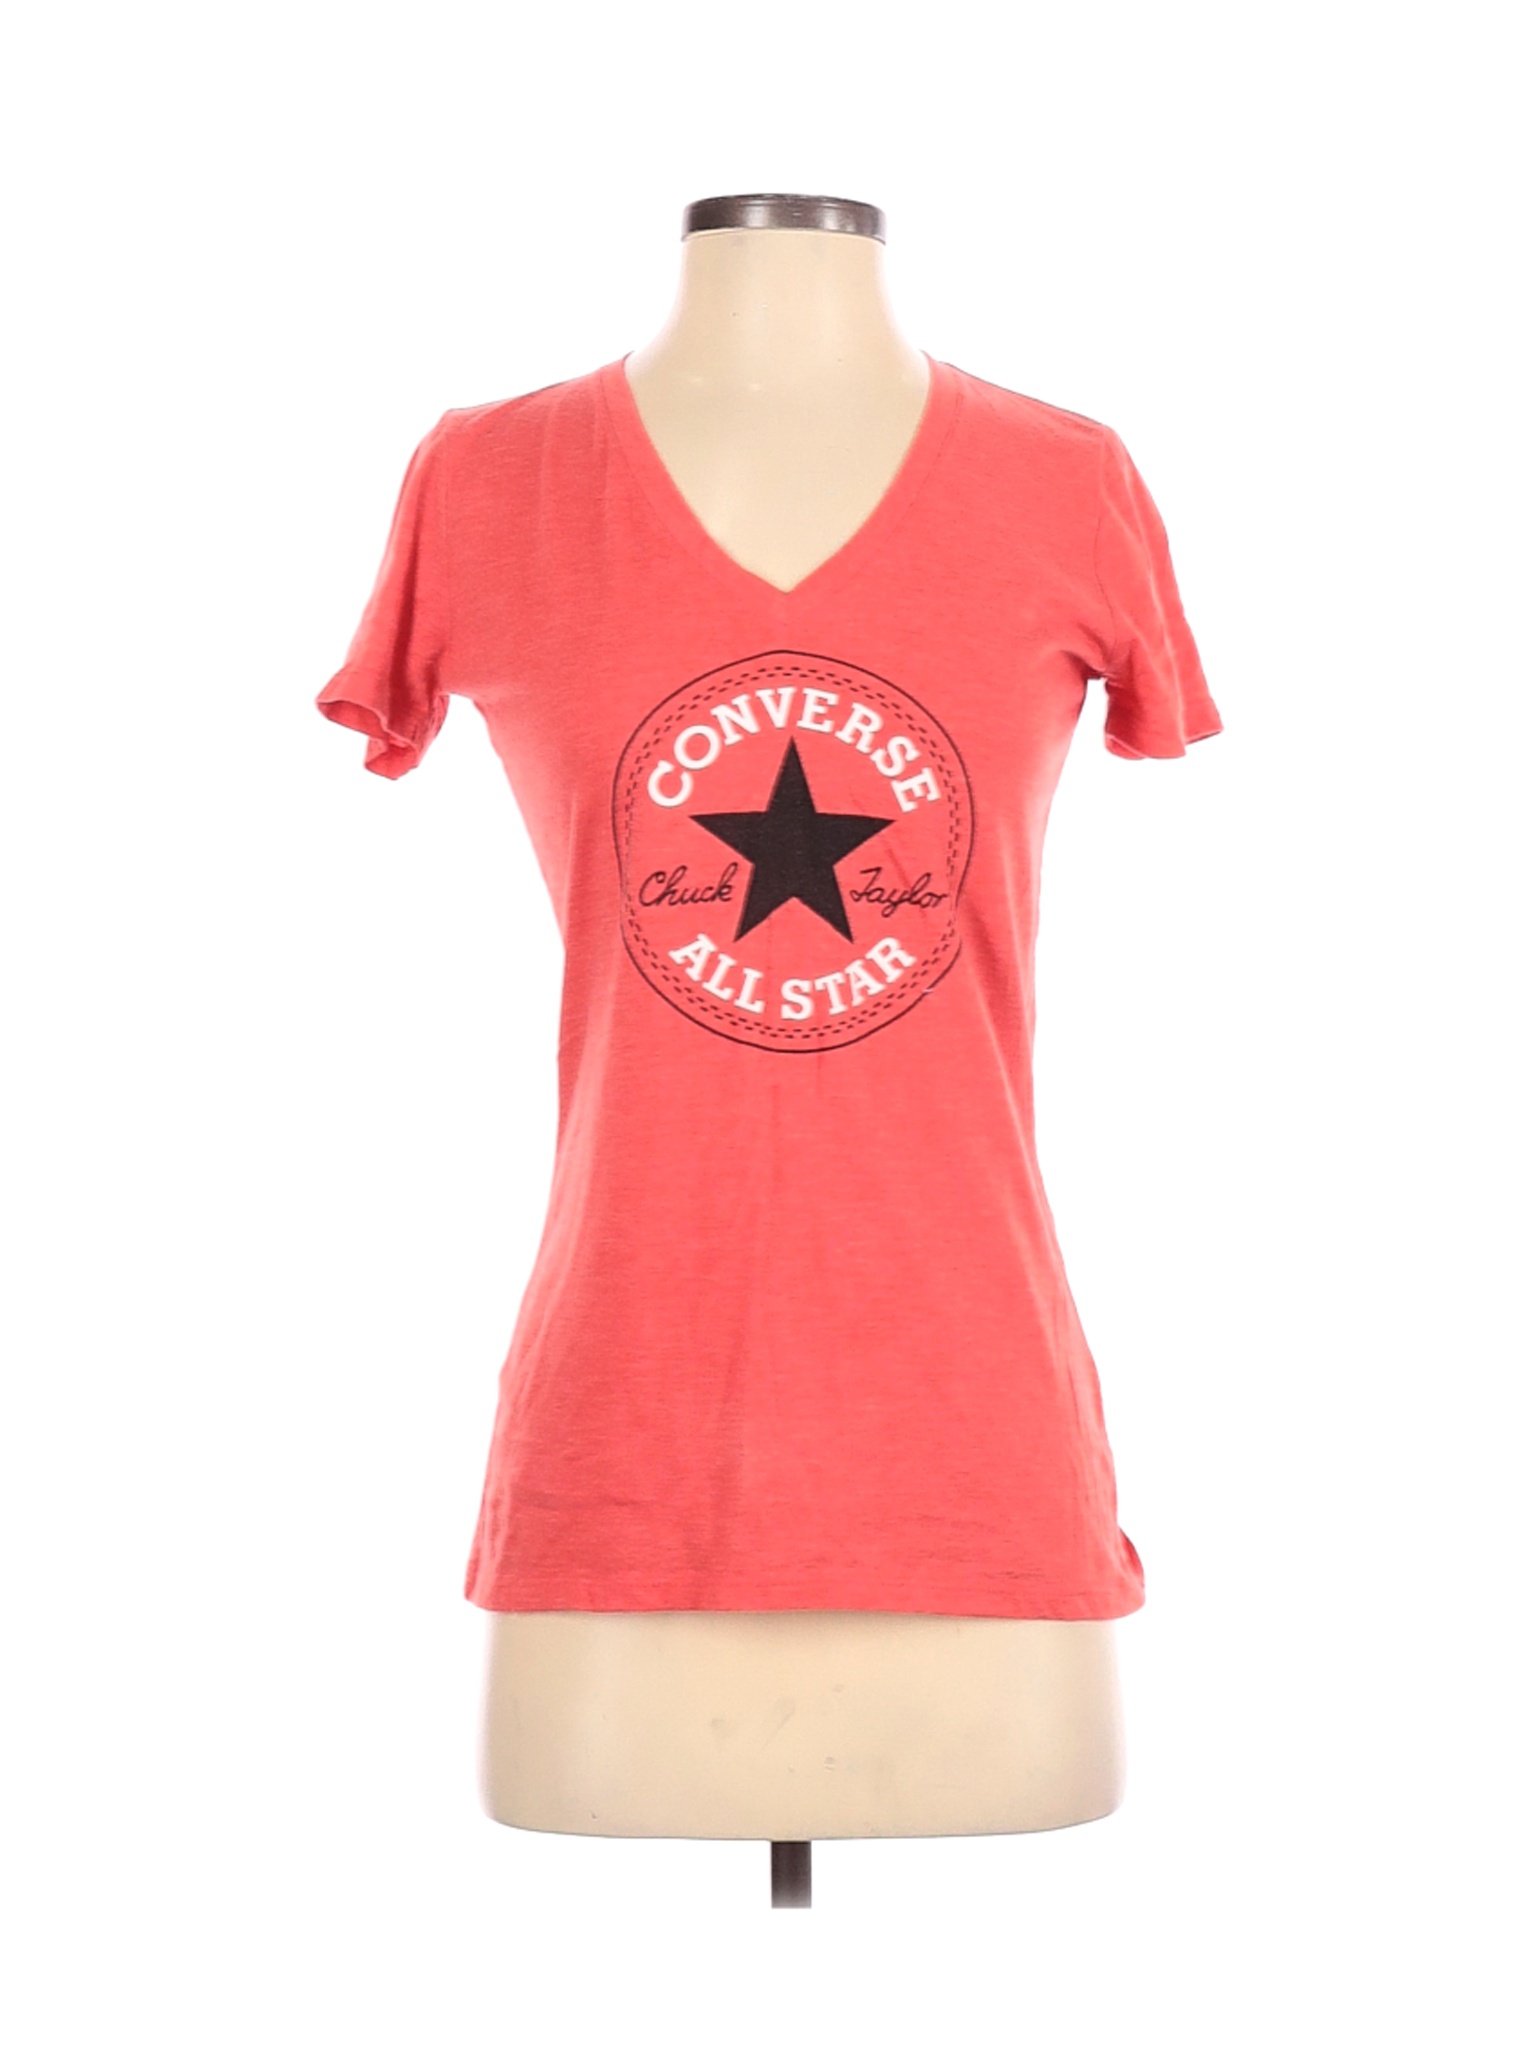 Converse Women Pink Short Sleeve T-Shirt S | eBay